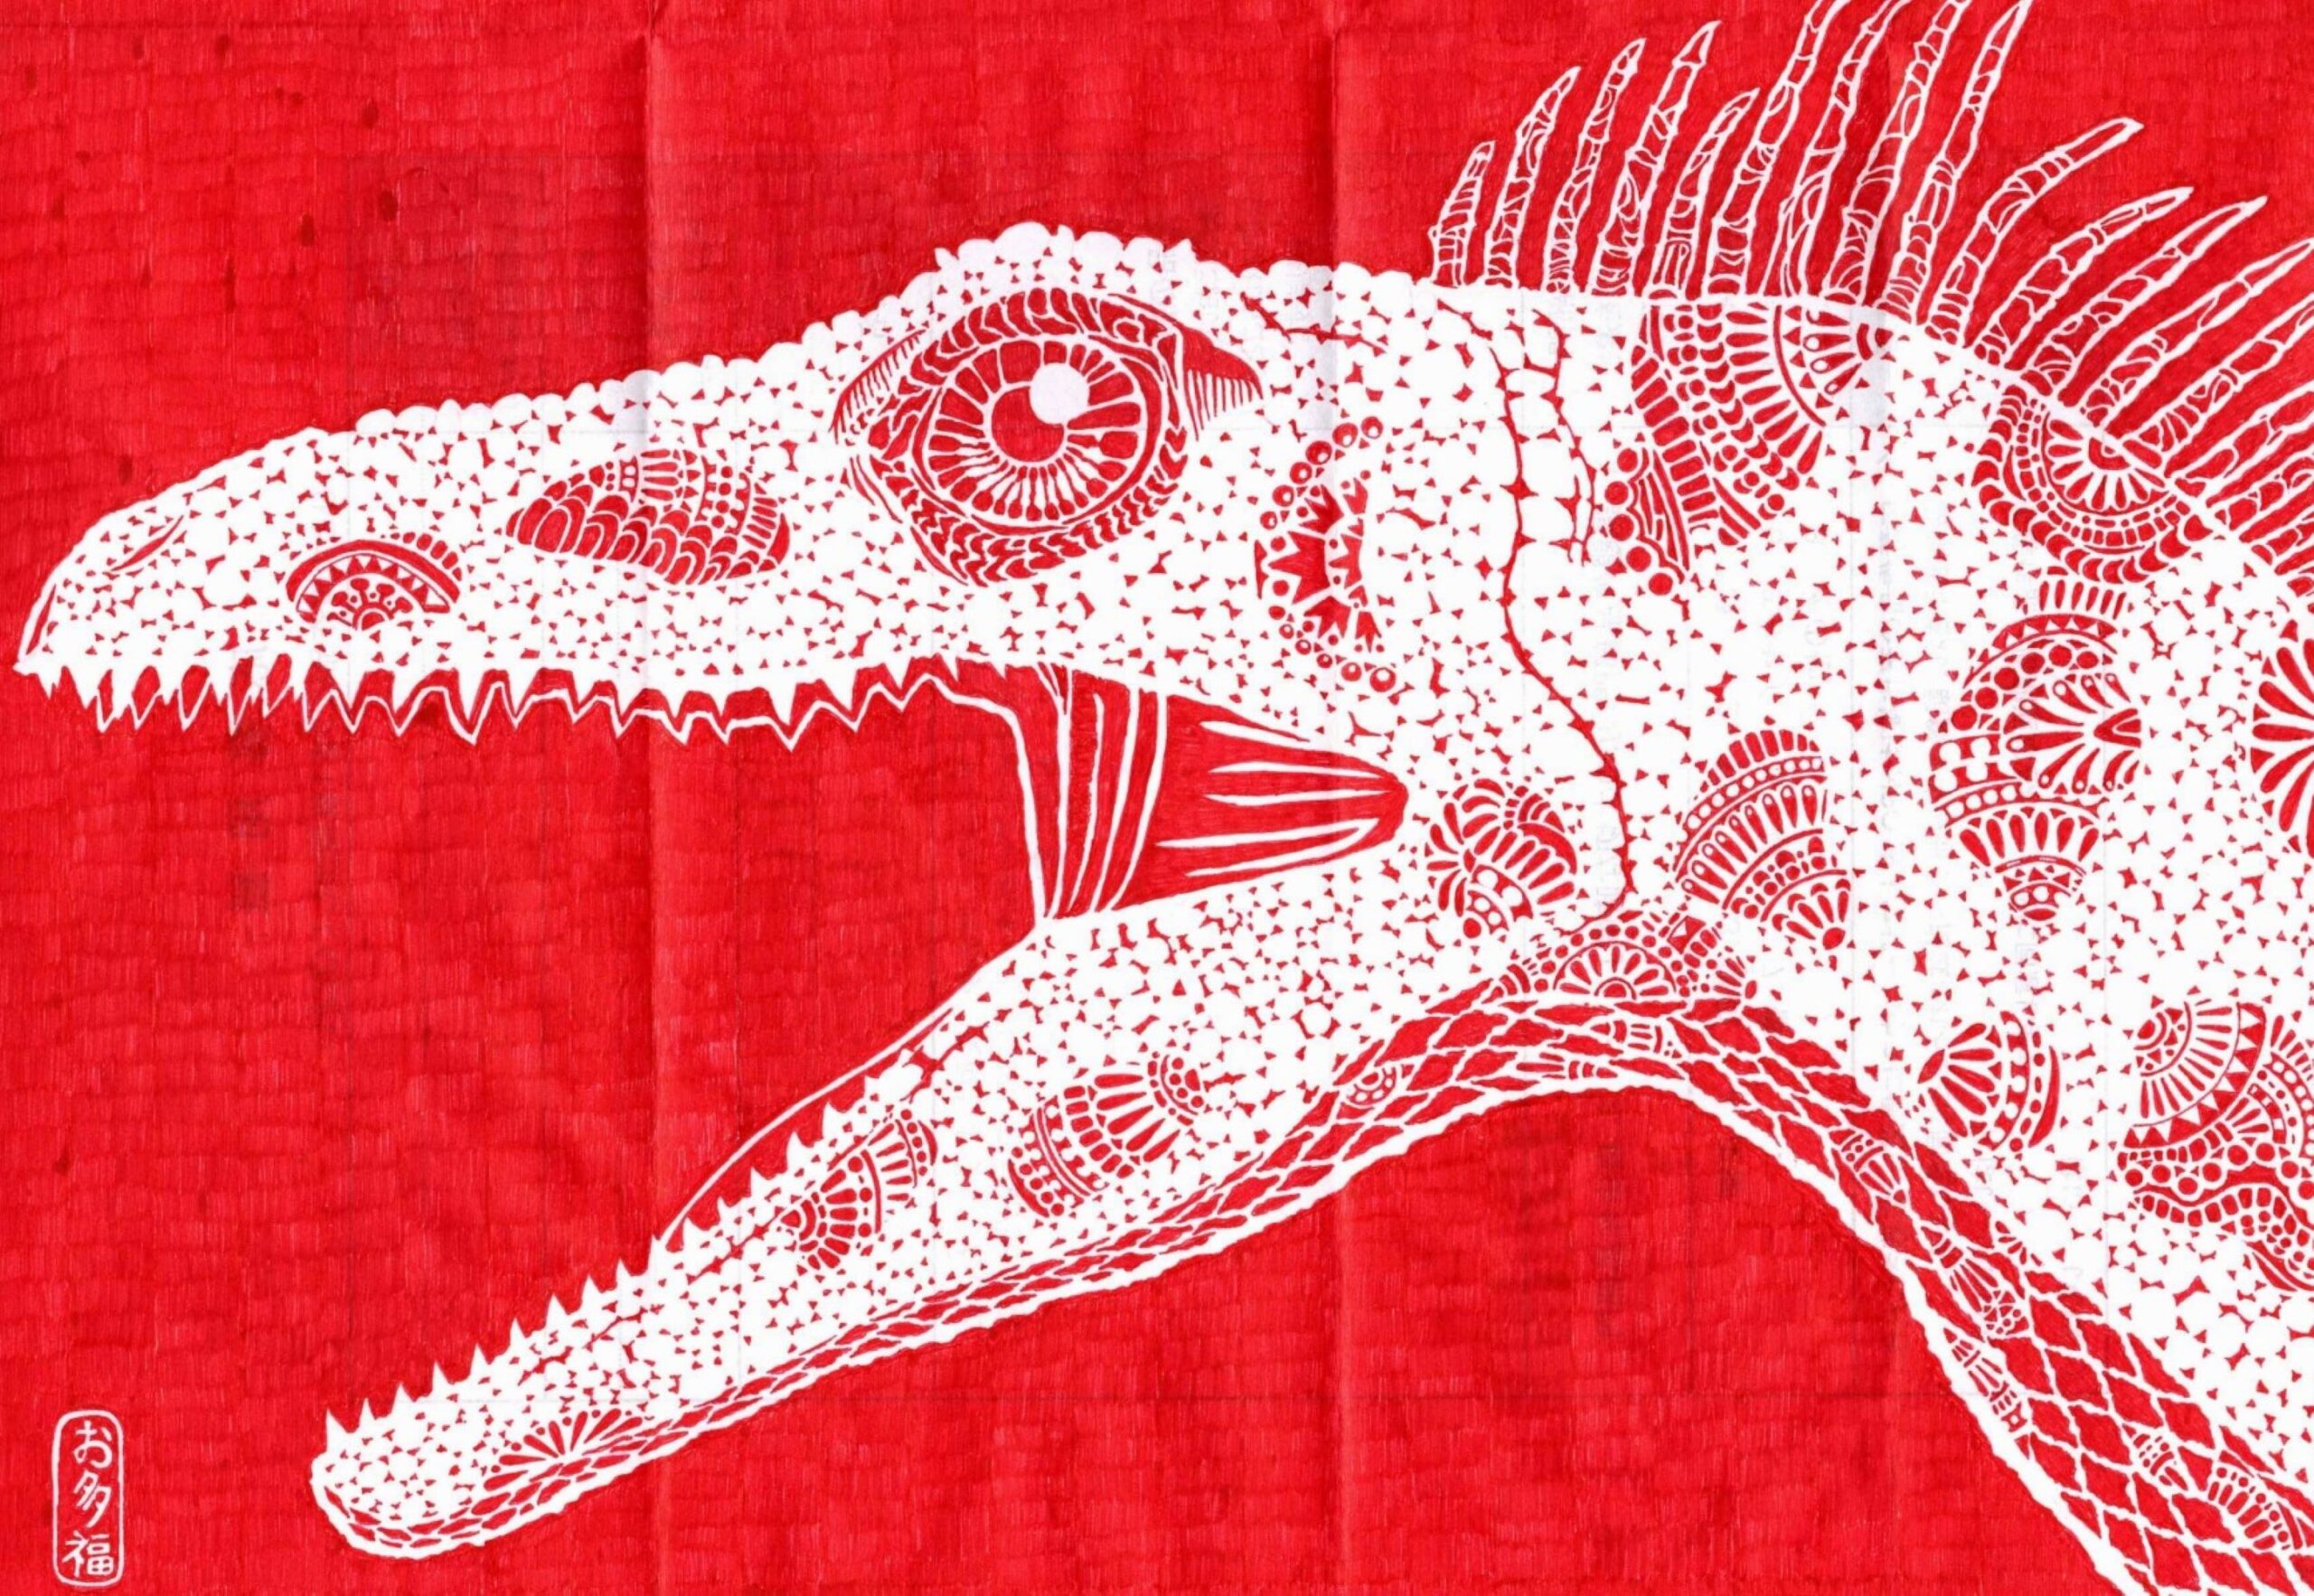 真っ赤な背景に、白抜きで、恐竜のような動物の左顔が大きく描かれている。丸い大きな瞳で、顔から首にかけて模様がある。頭には十数本のトサカが付いている。左下に「お多福」のサイン。